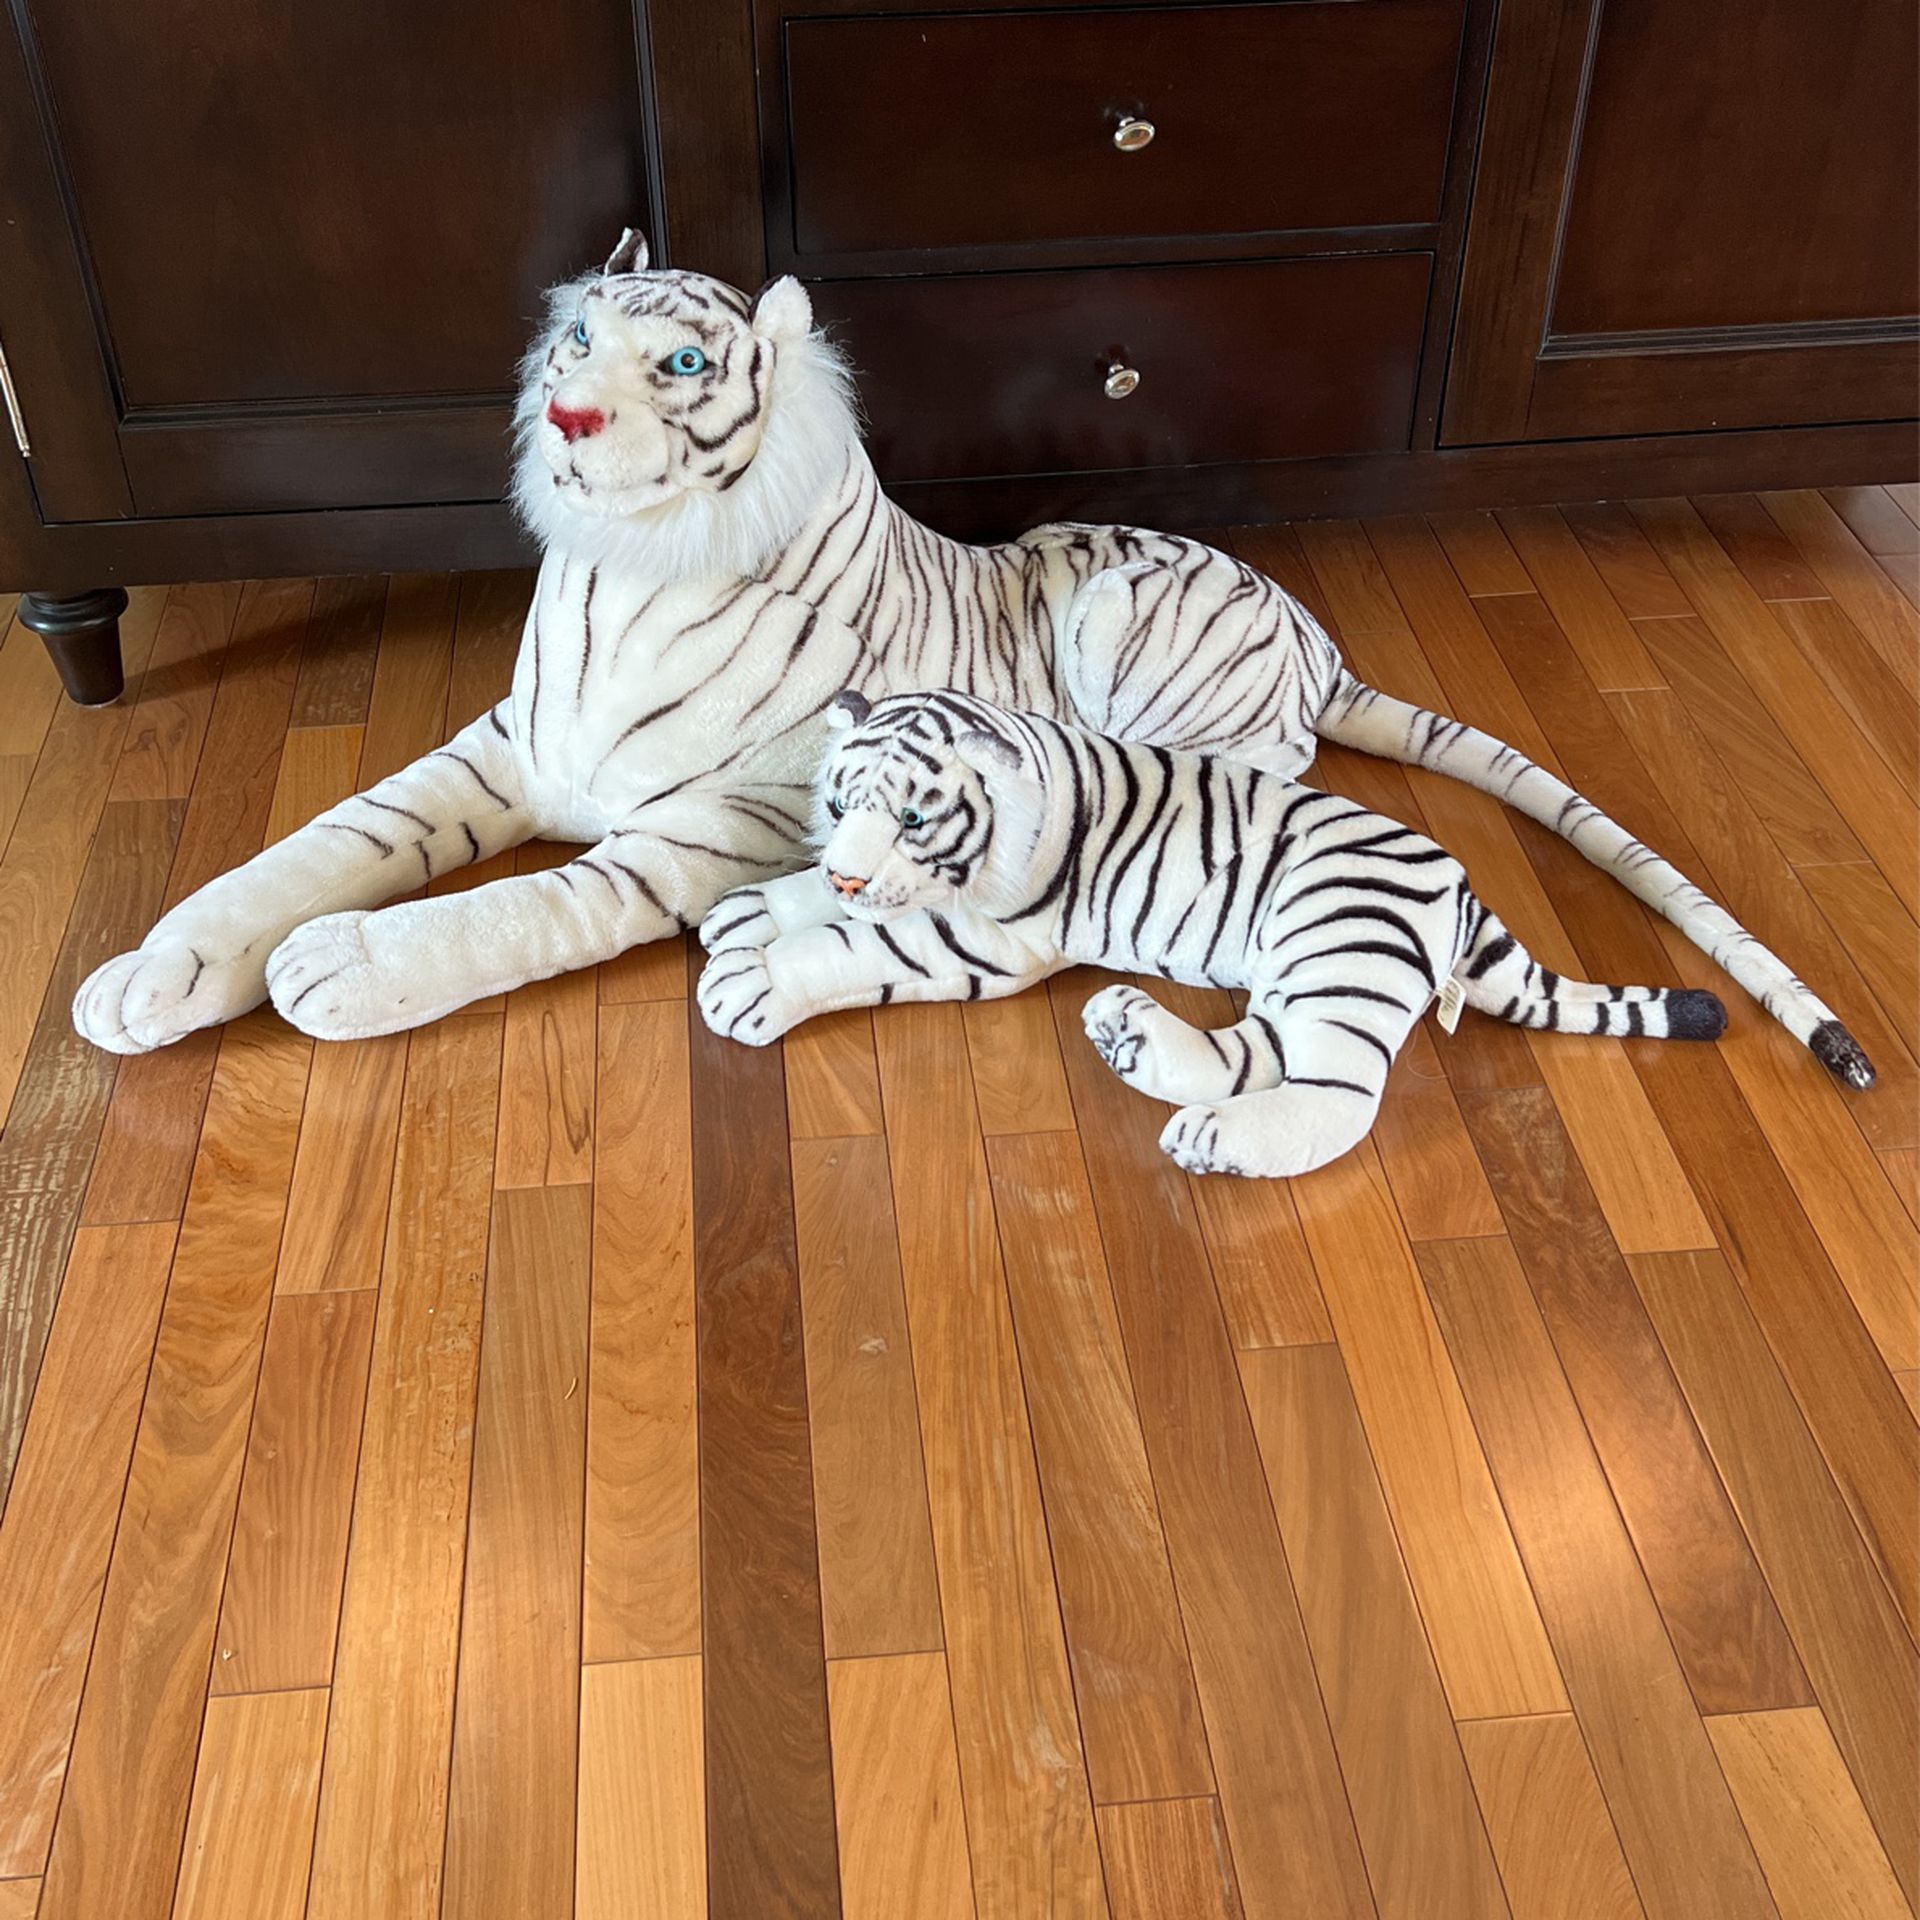 Two (2) White Tiger Plush Toys